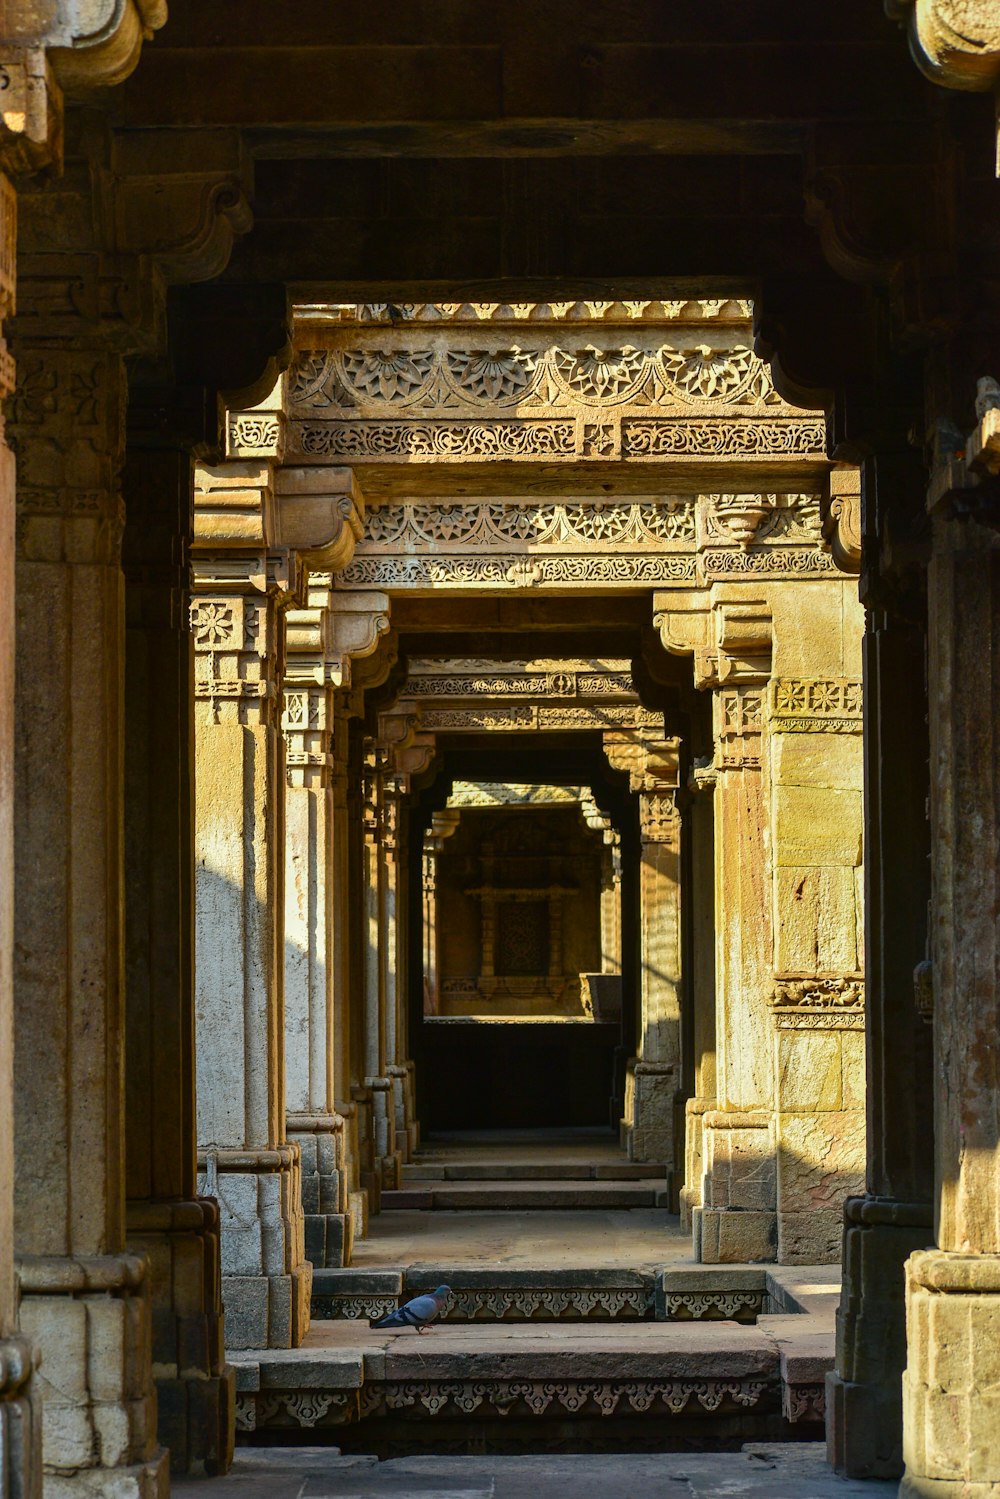 a large ornate doorway